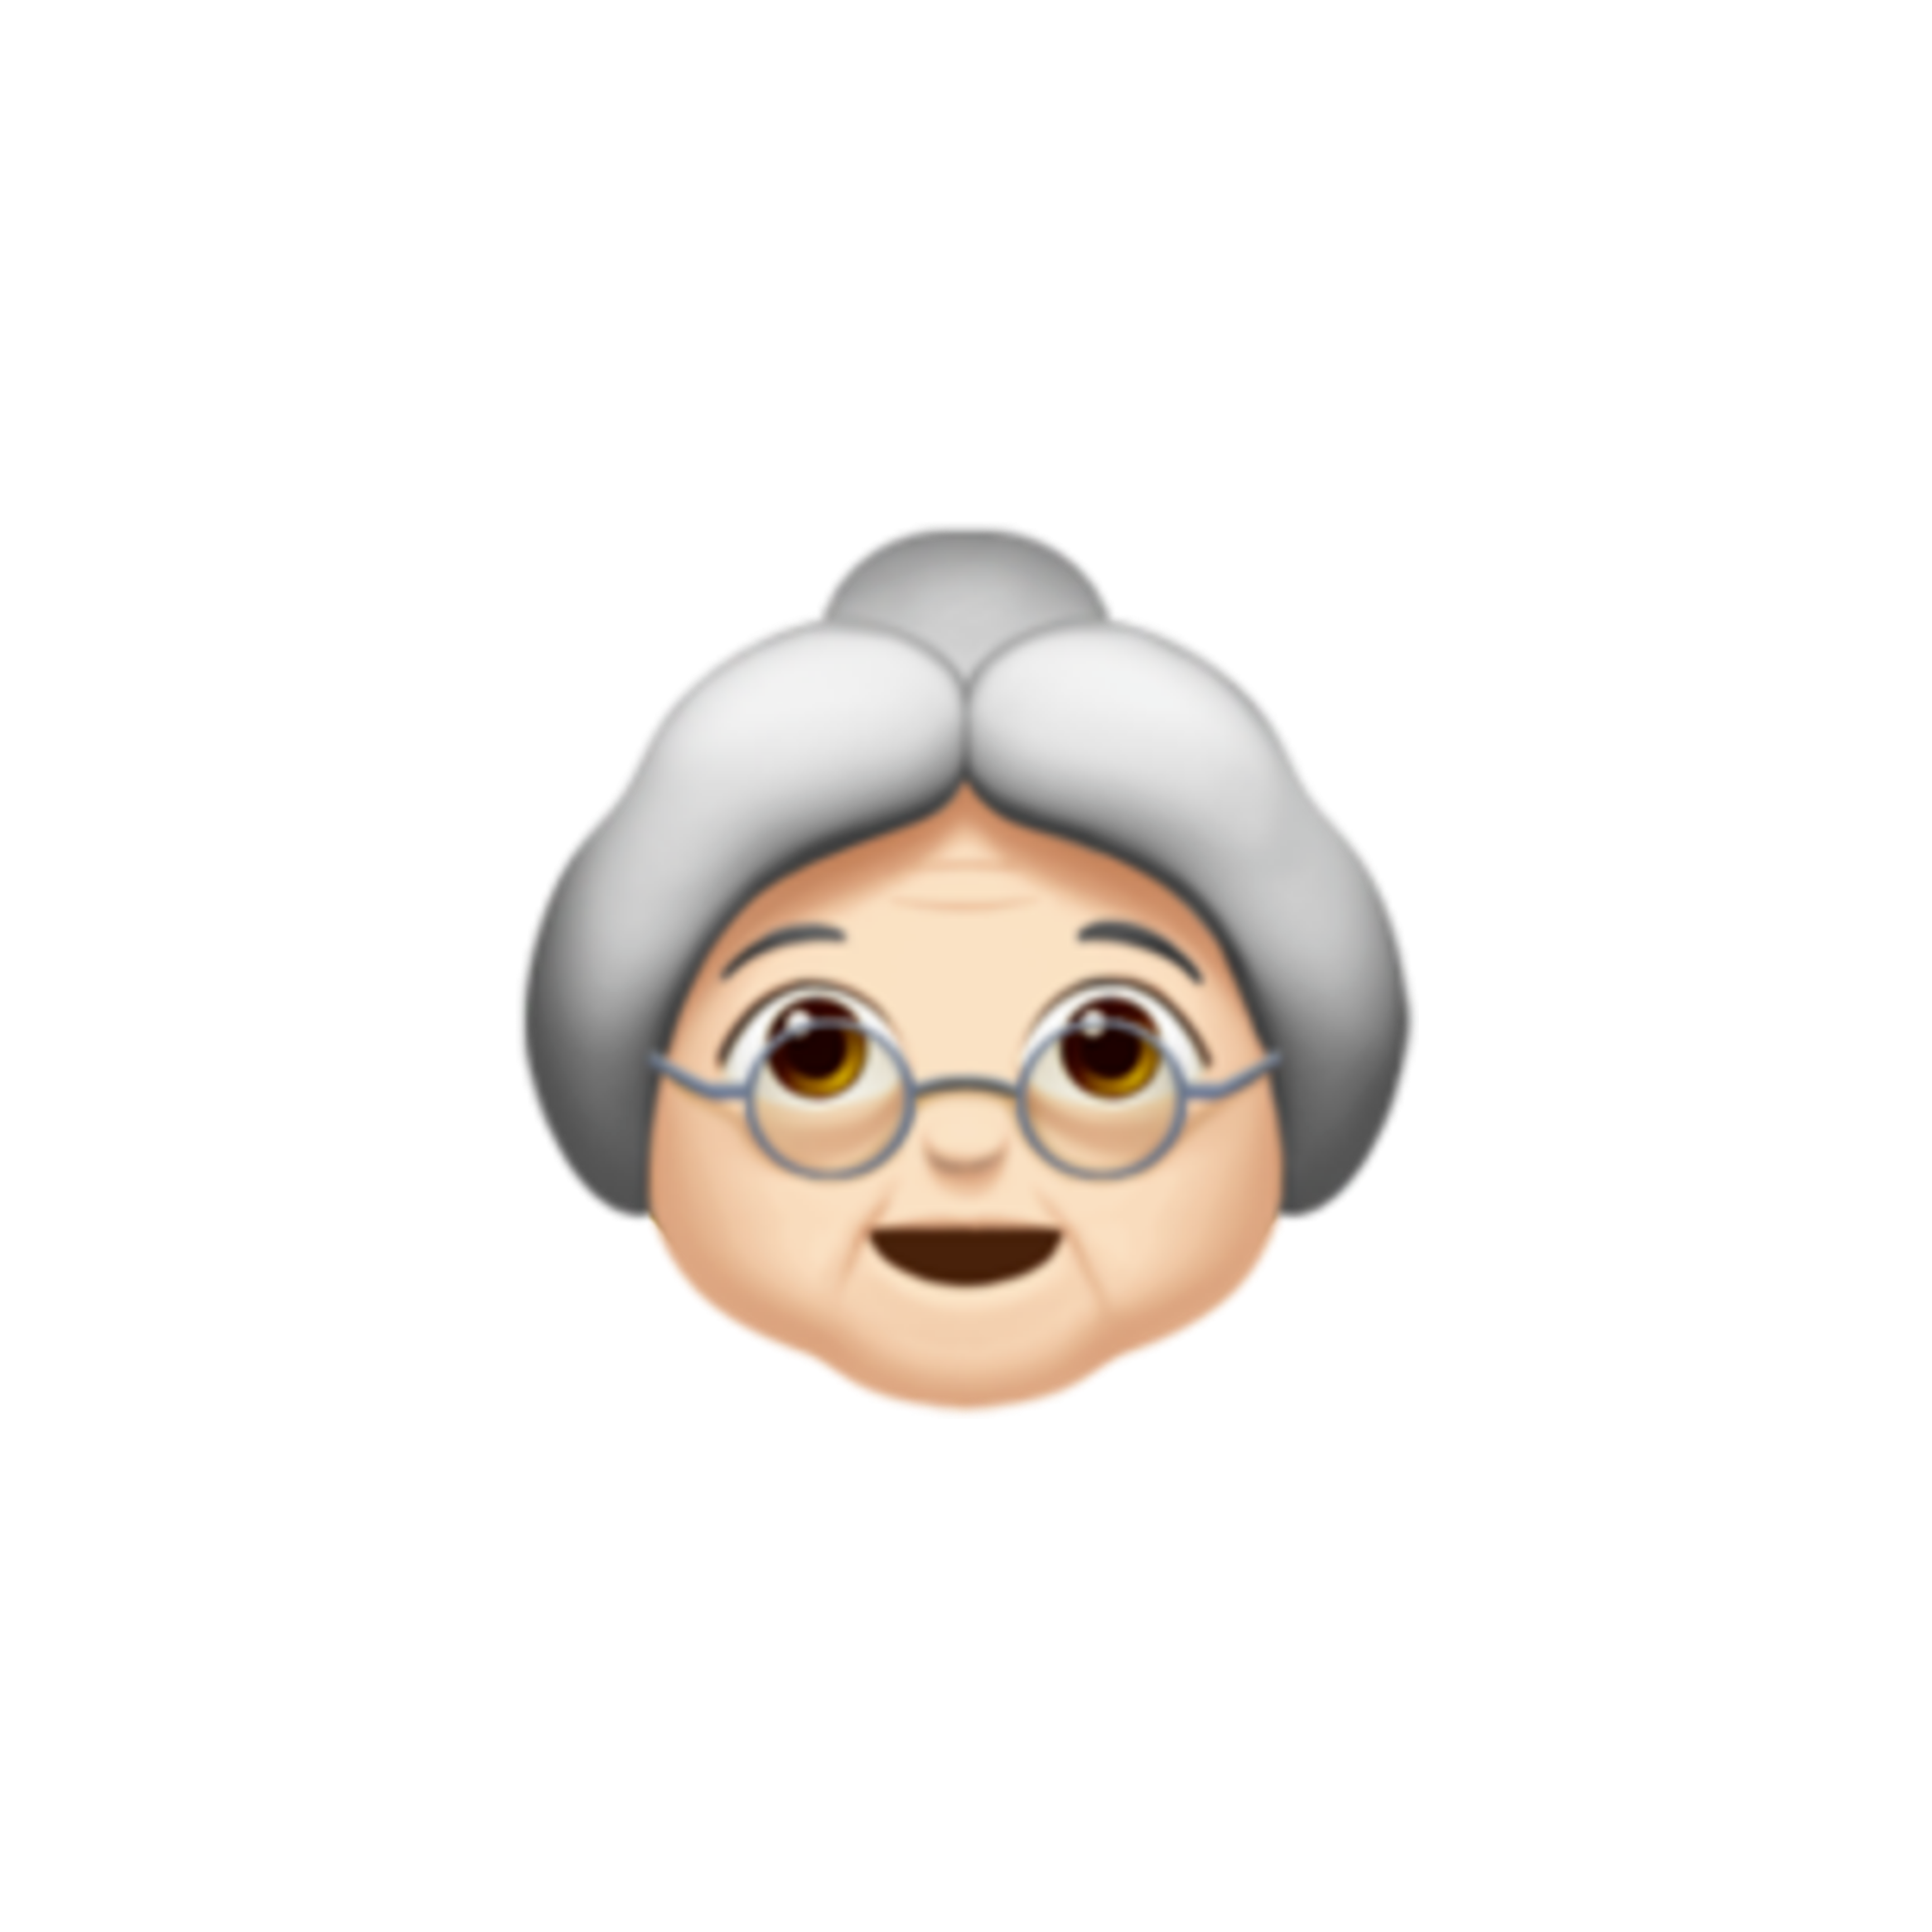 Old emoji. Смайлик бабушка. ЭМОДЖИ бабушка. Смайлик бабушка и дедушка. Смайлик старуха.